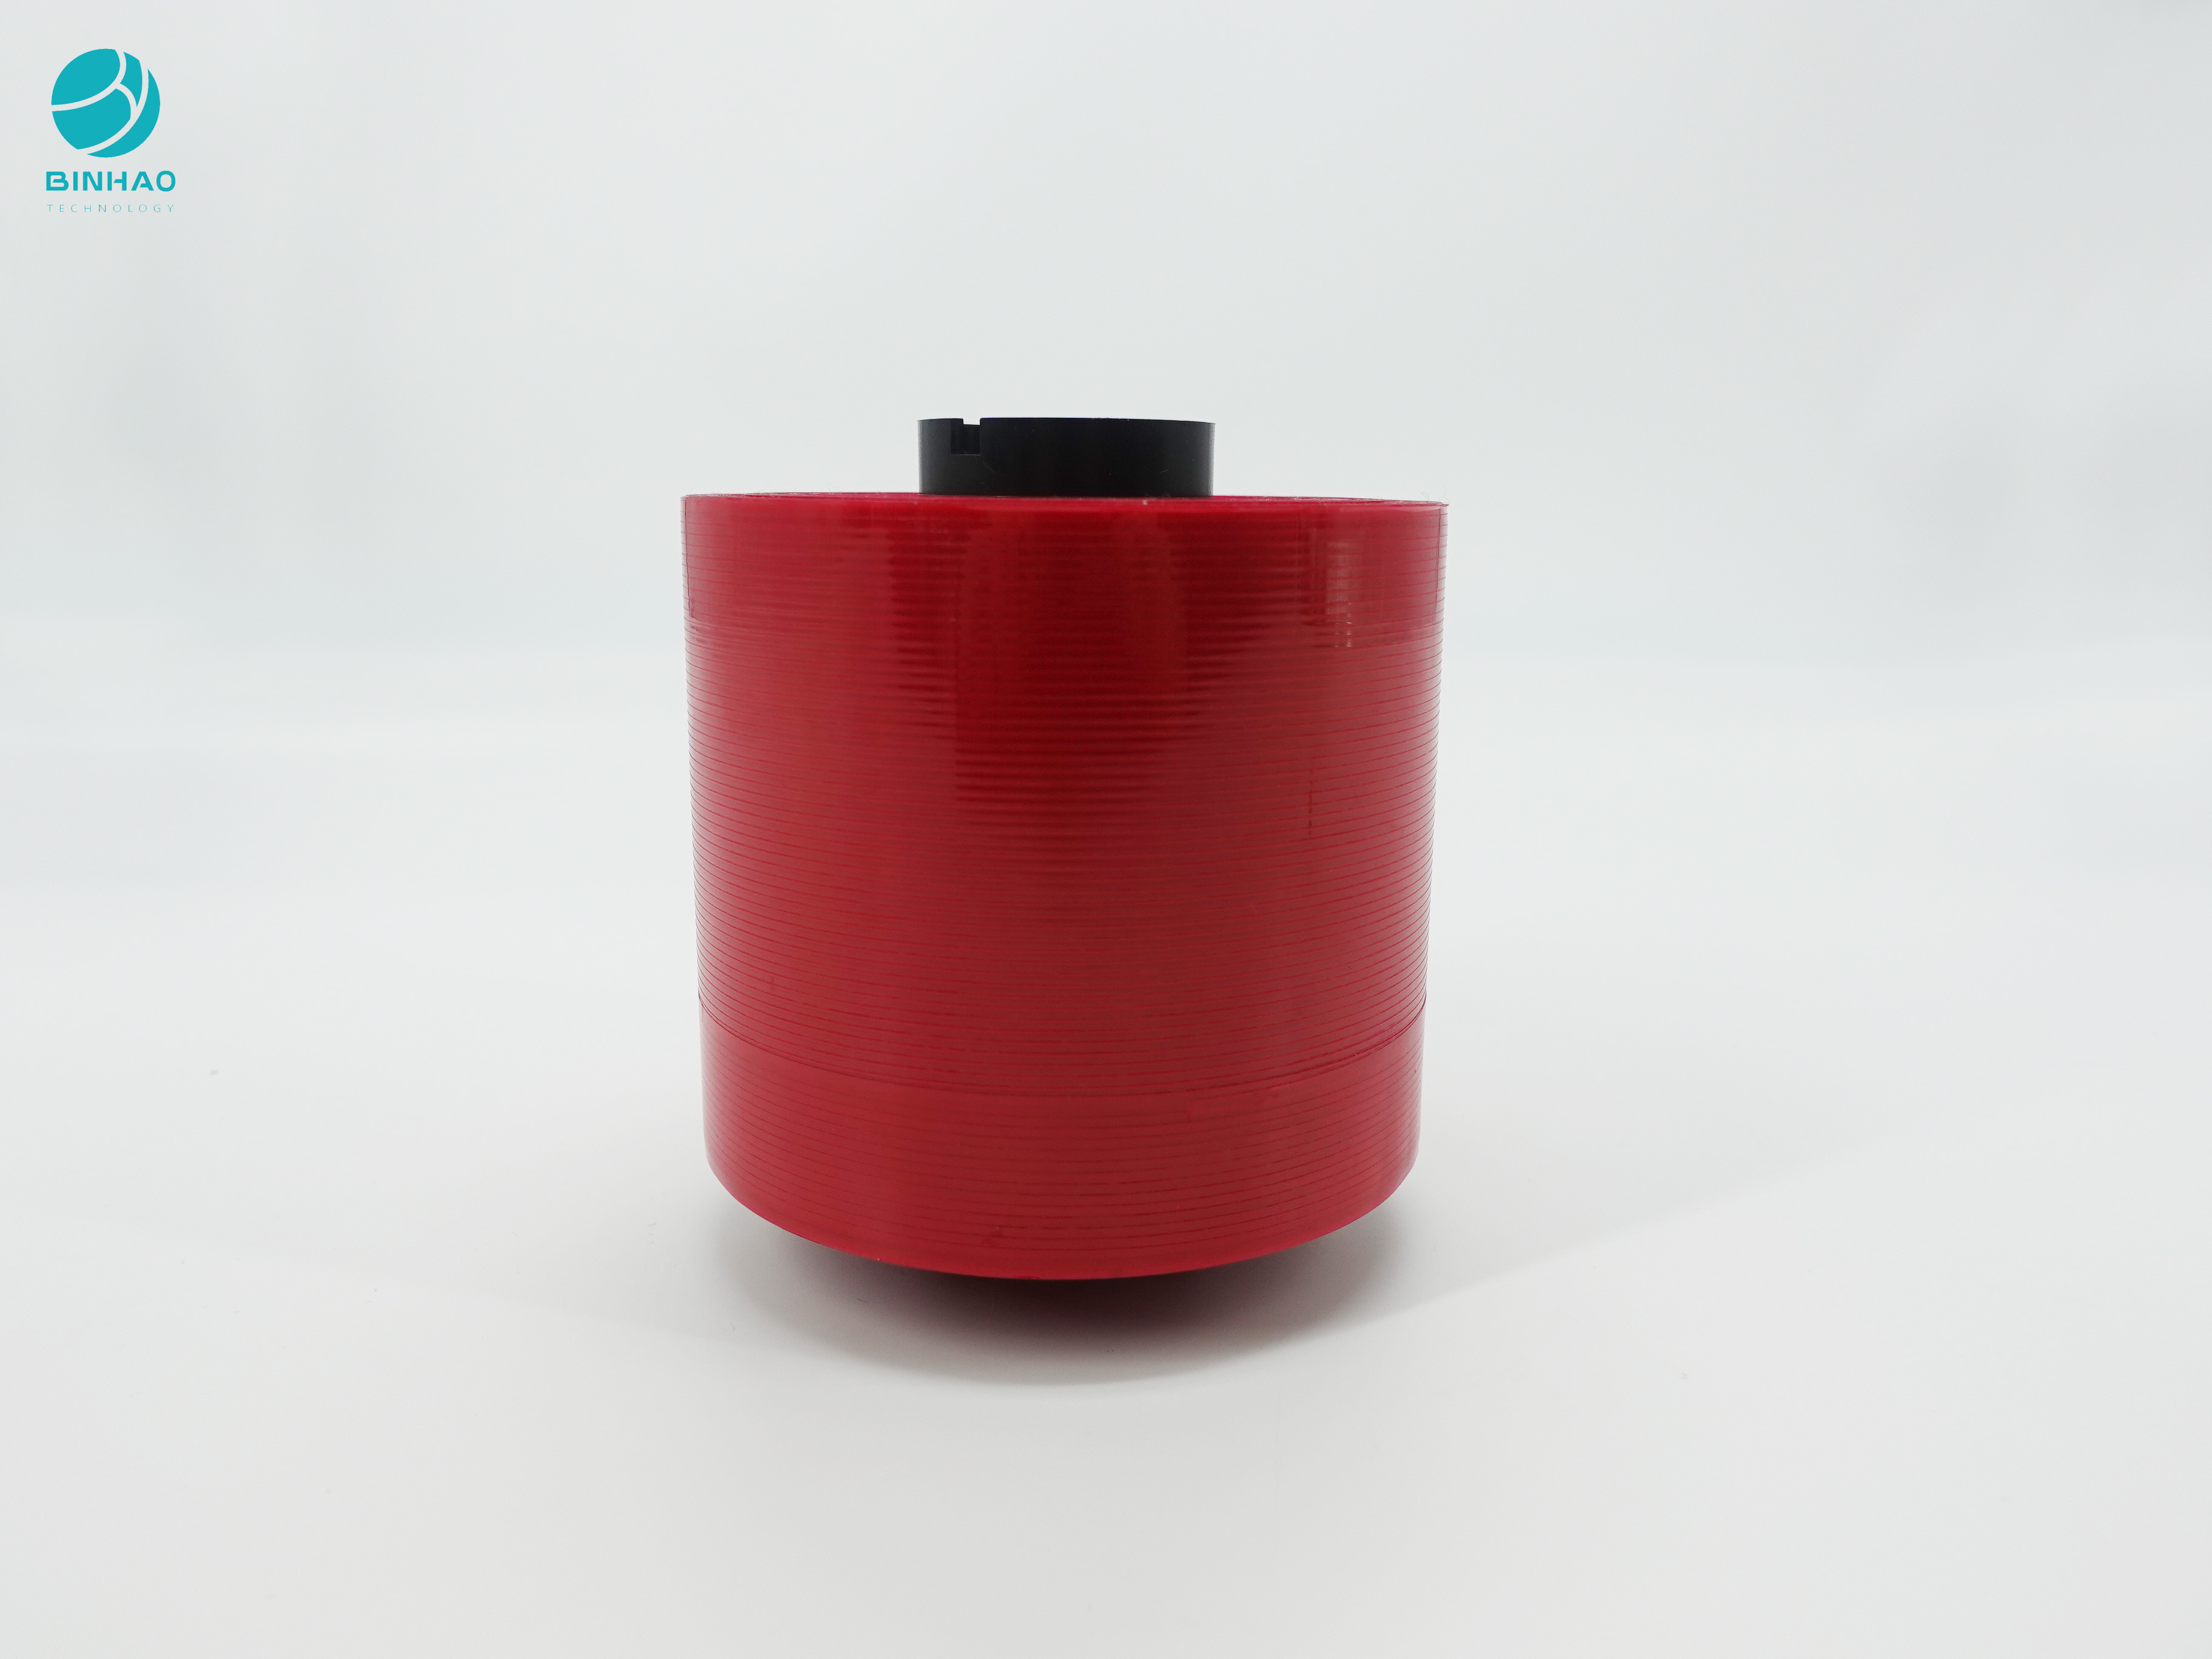 la cinta del rasgón de la seguridad de 2.5m m Bopp para el lacre de Pakage y fáciles de color rojo oscuro se abren